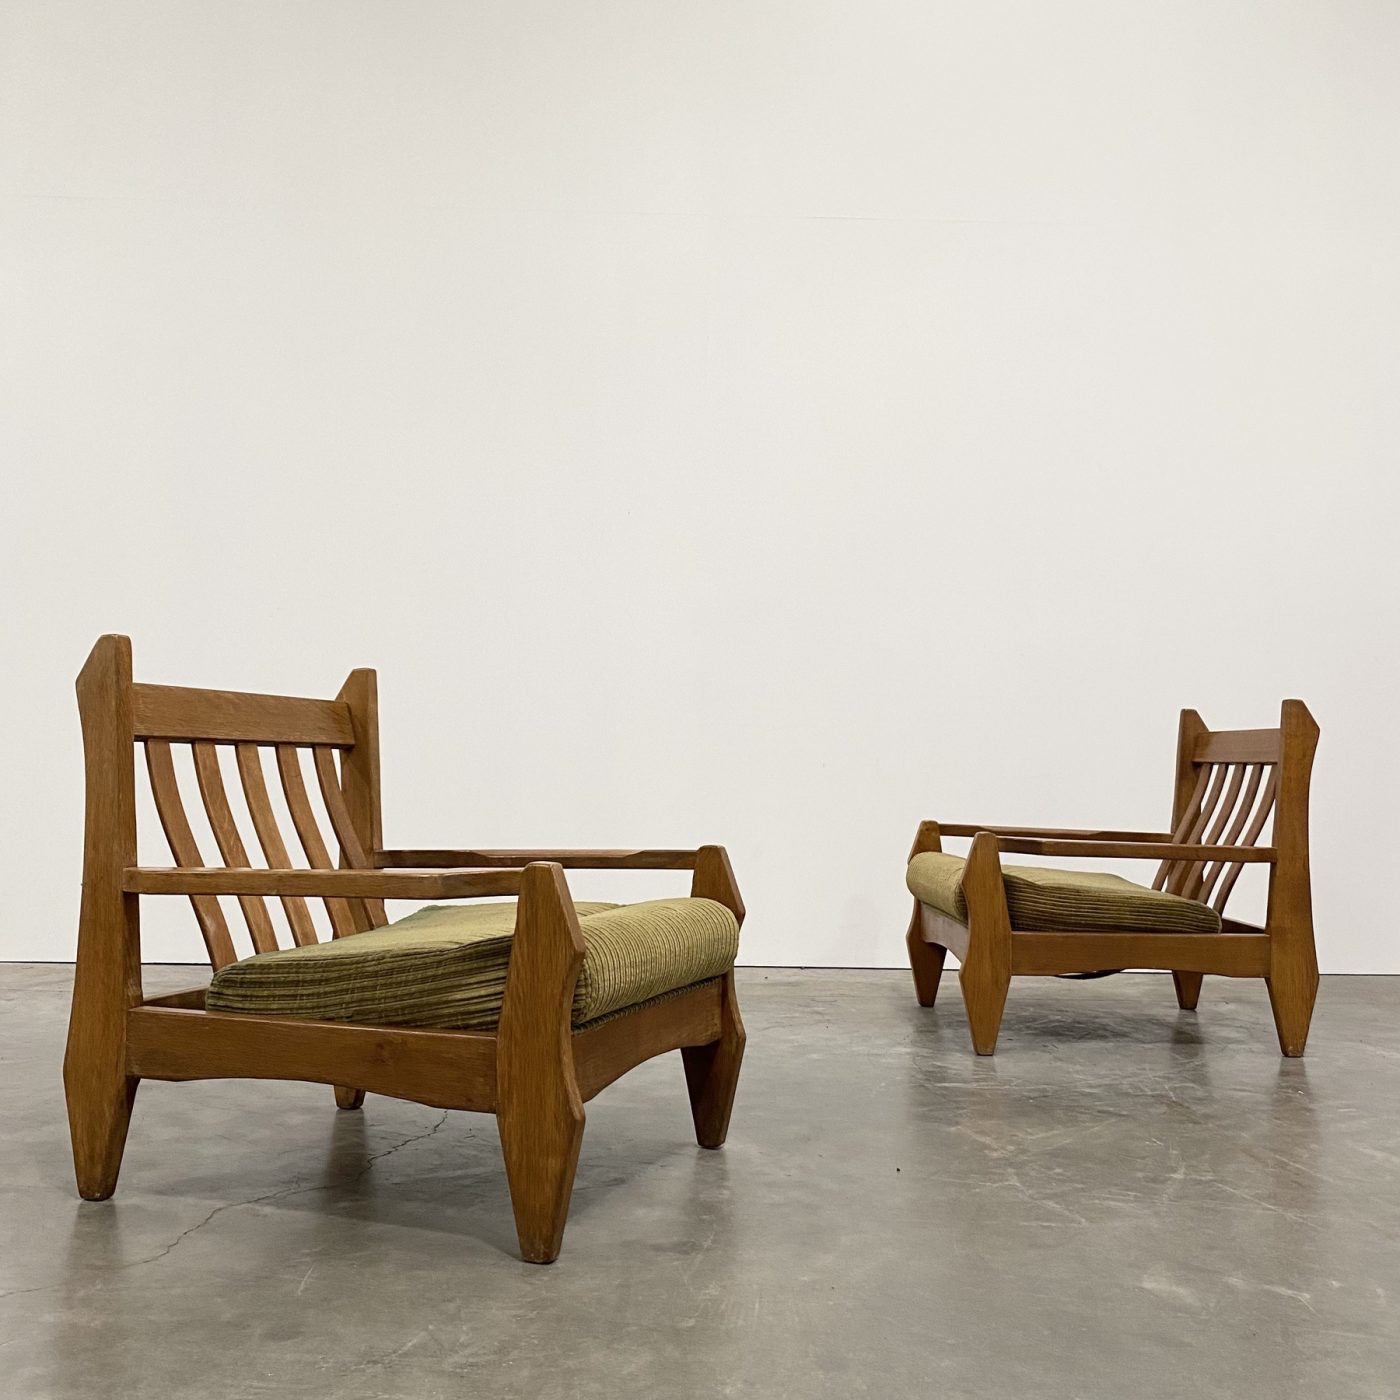 objet-vagabond-oak-armchairs0007